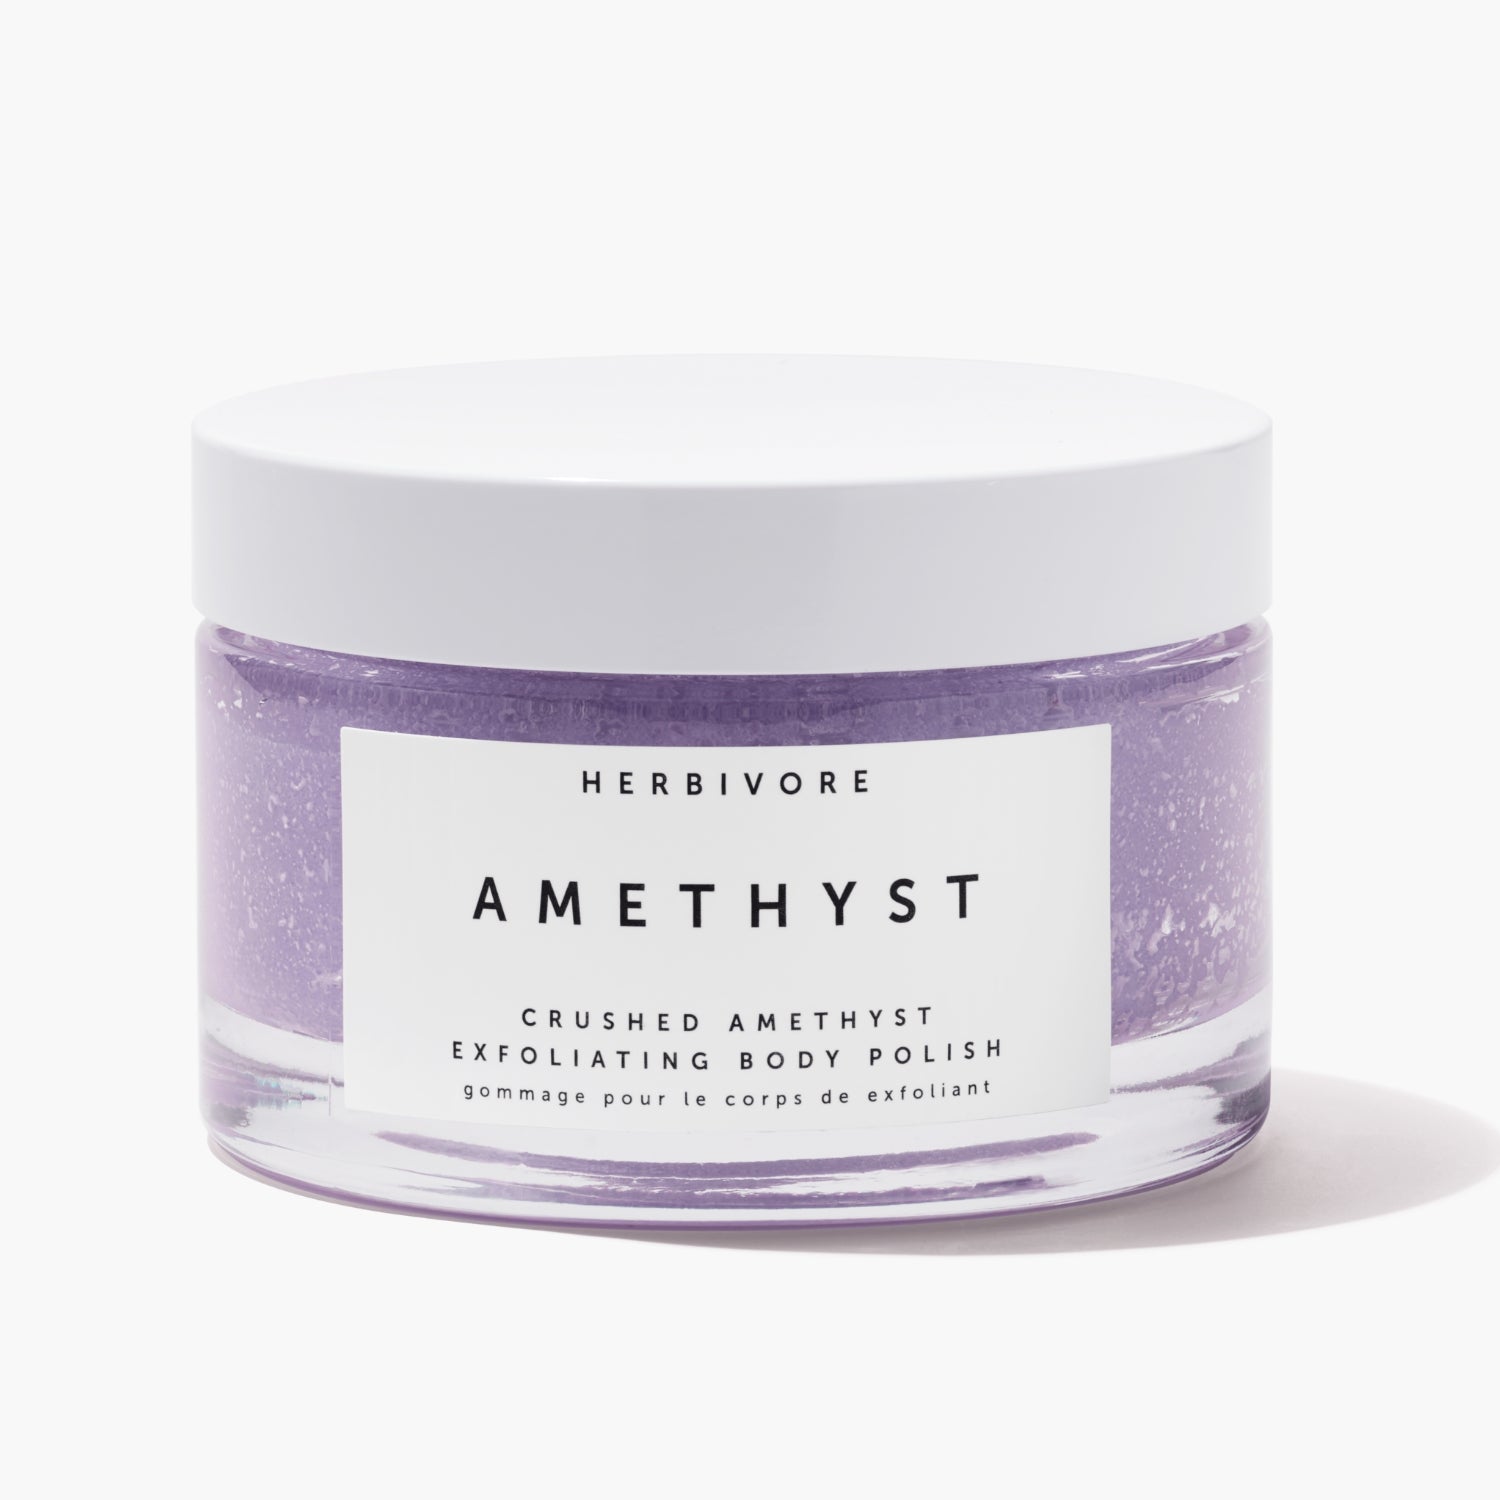 Clear jar of purple Amethyst Exfoliating Body Polish 